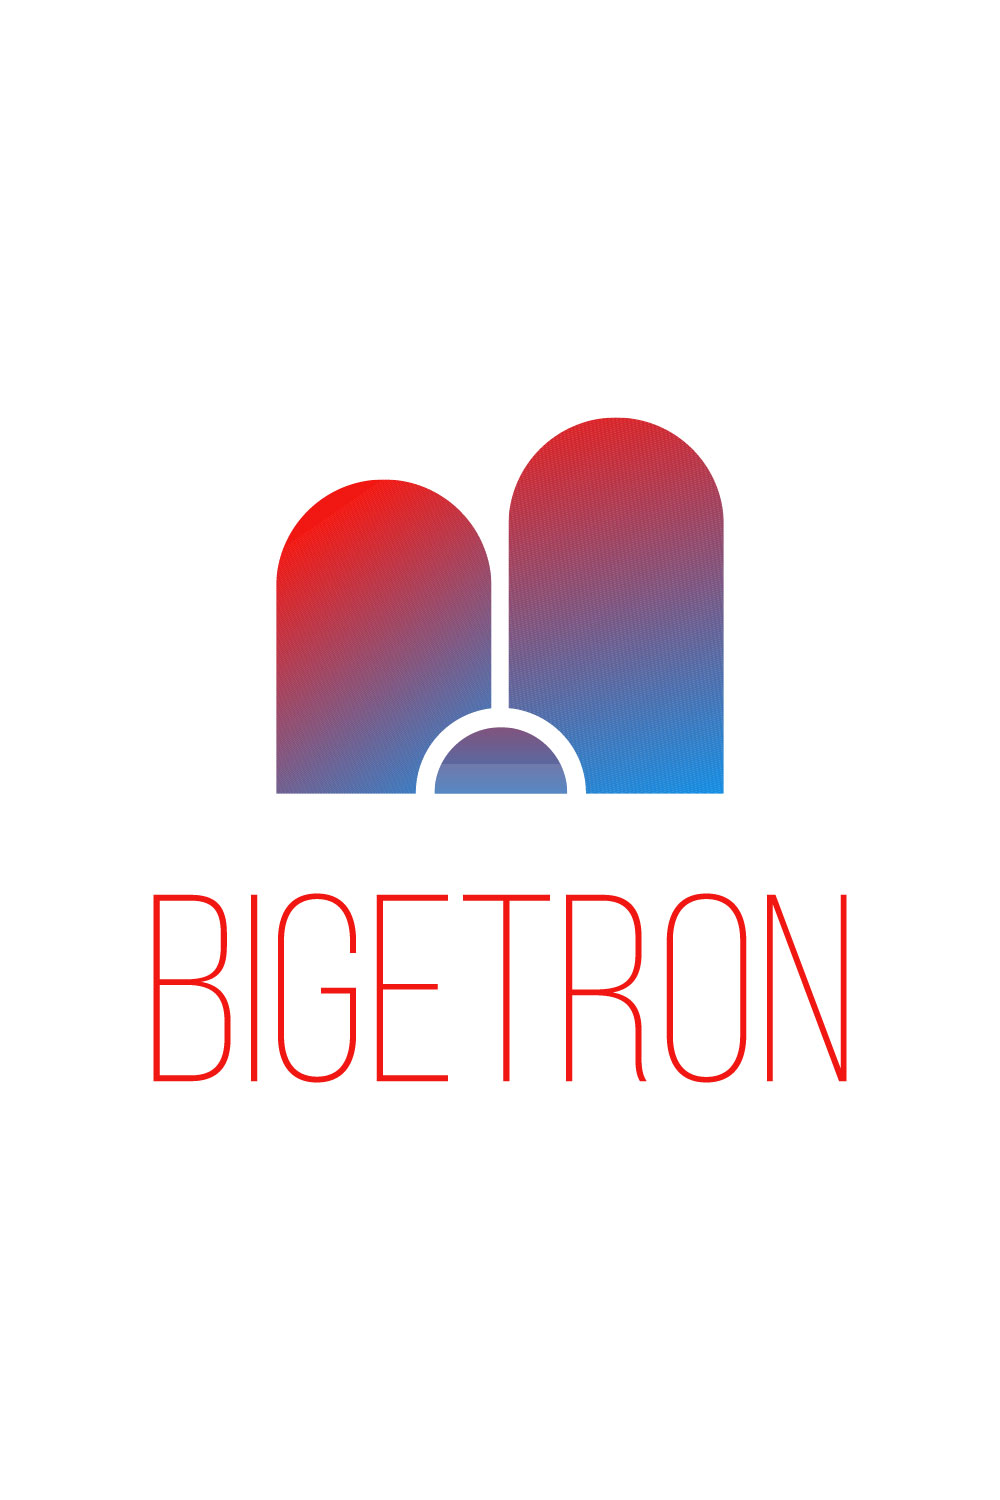 b letter logo bigetron logo preview 2